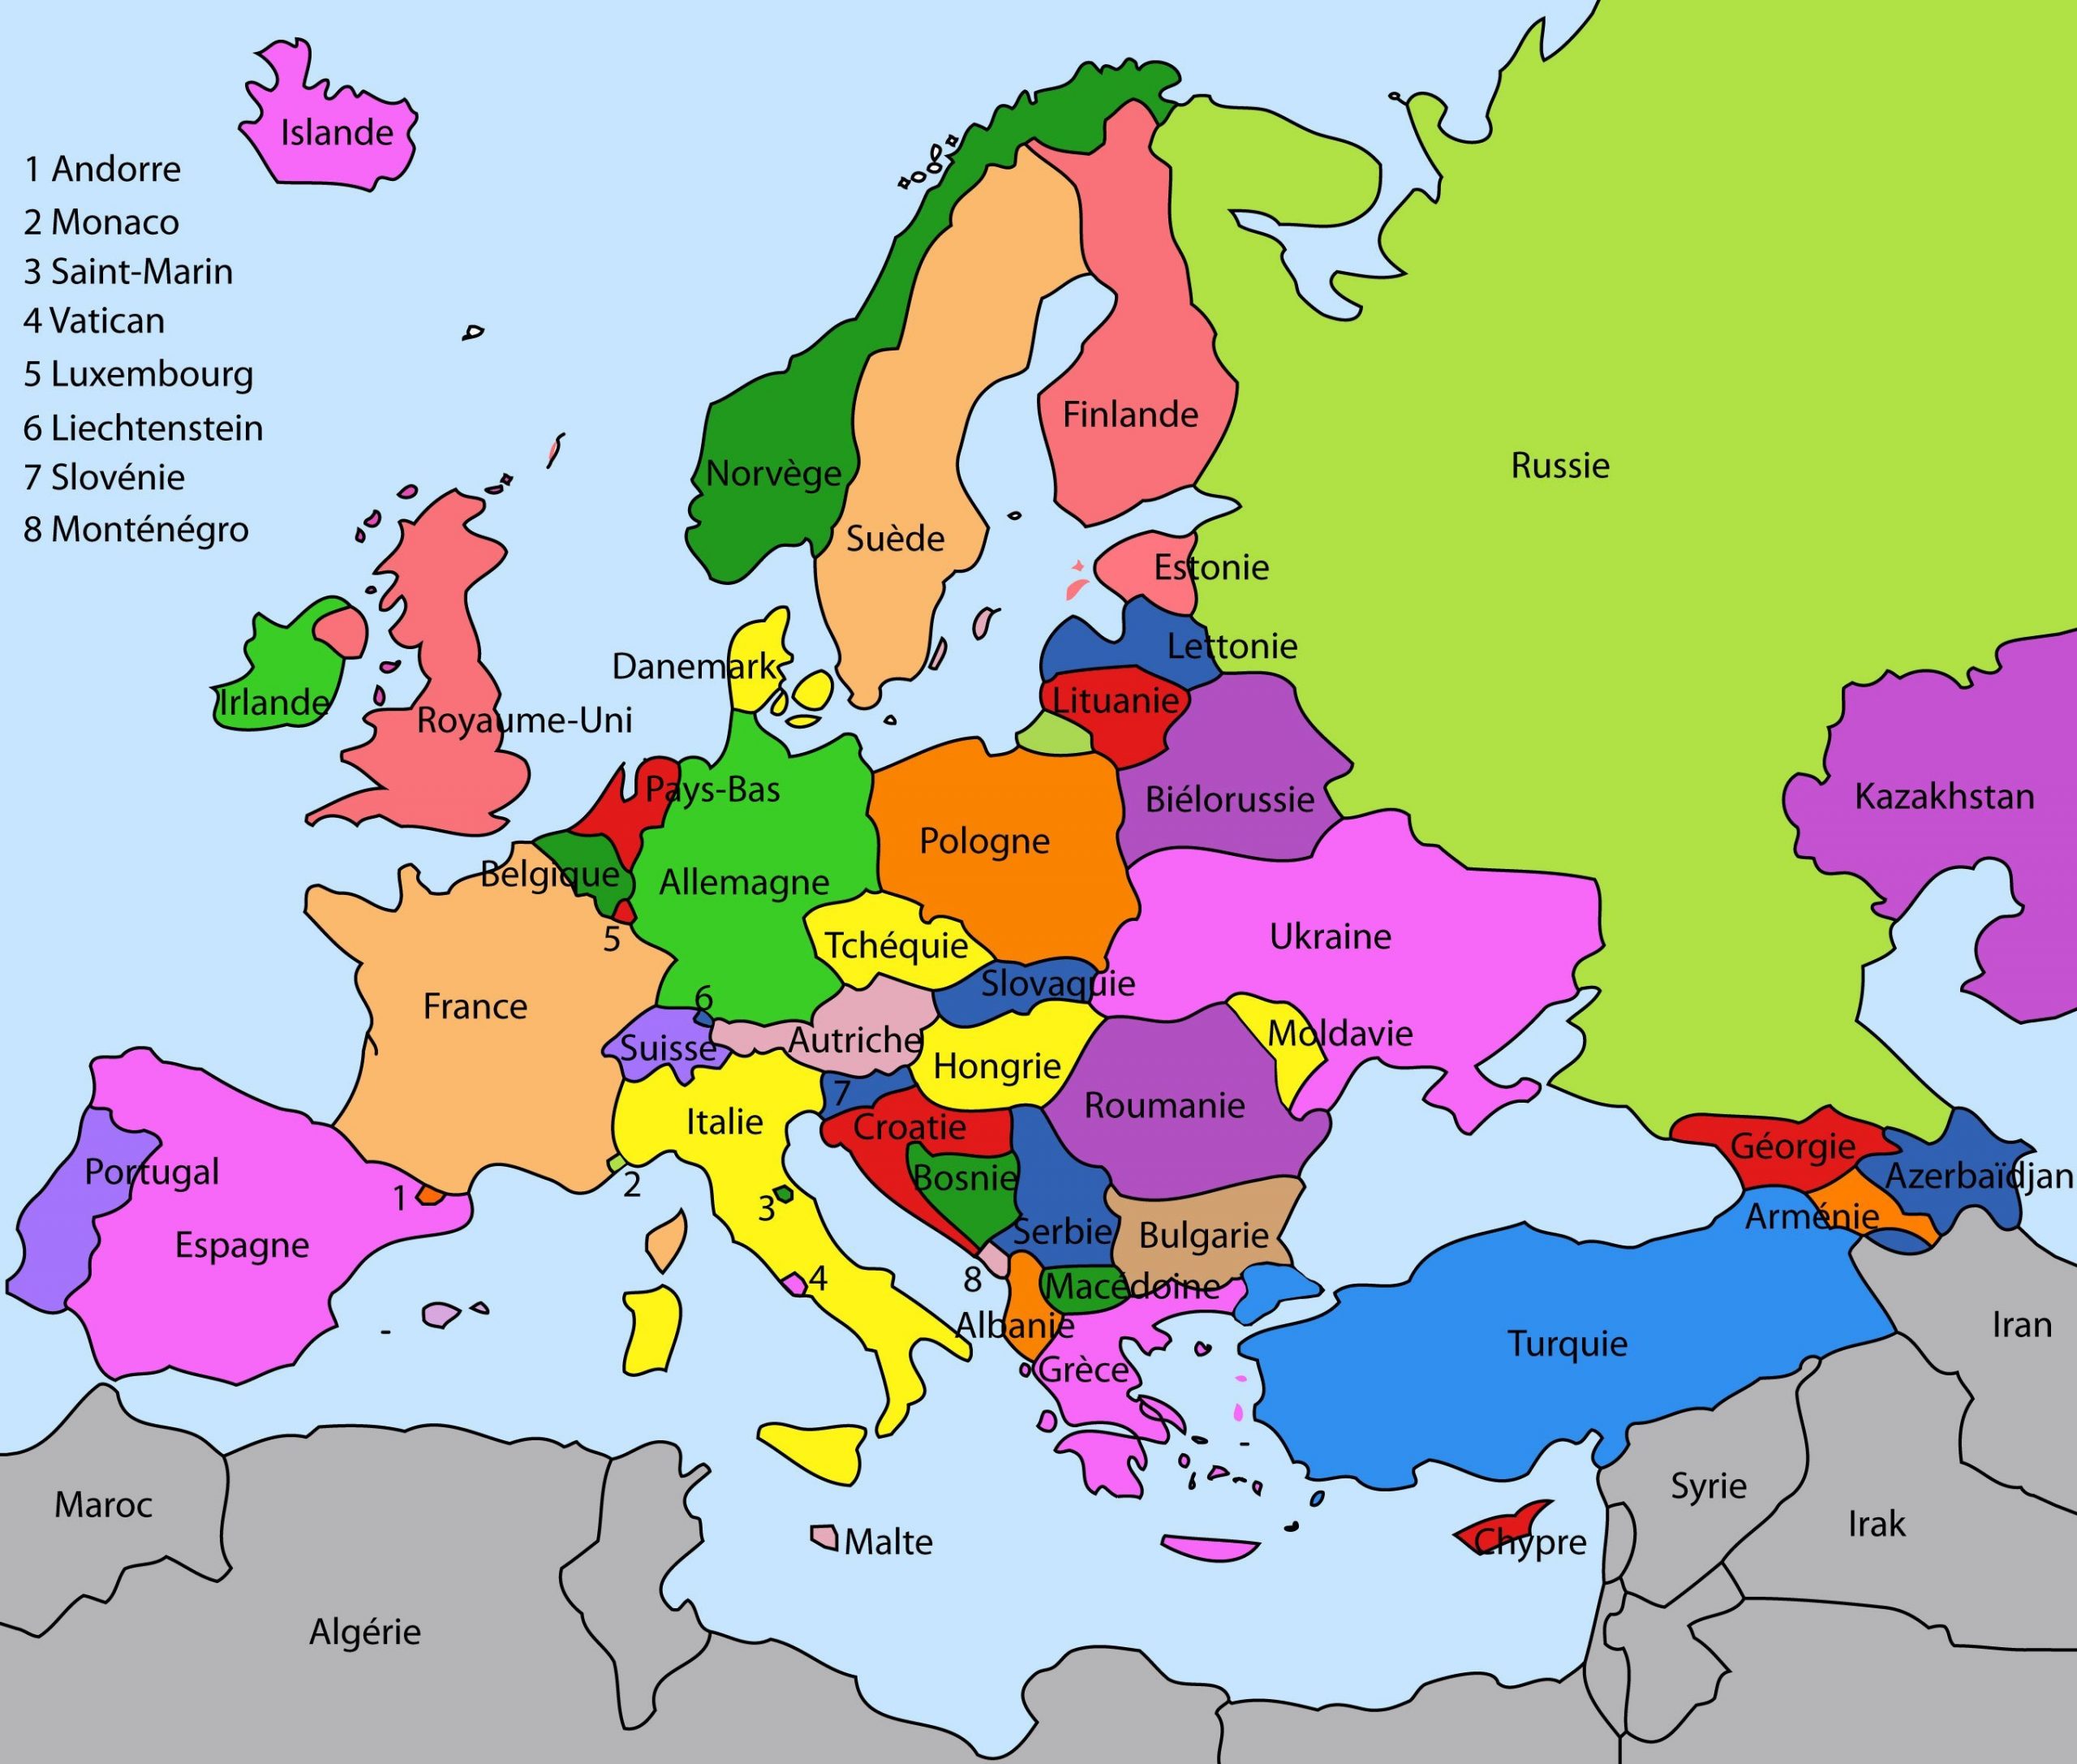 L'europe Expliquée Aux Enfants dedans Tout Les Pays D Europe